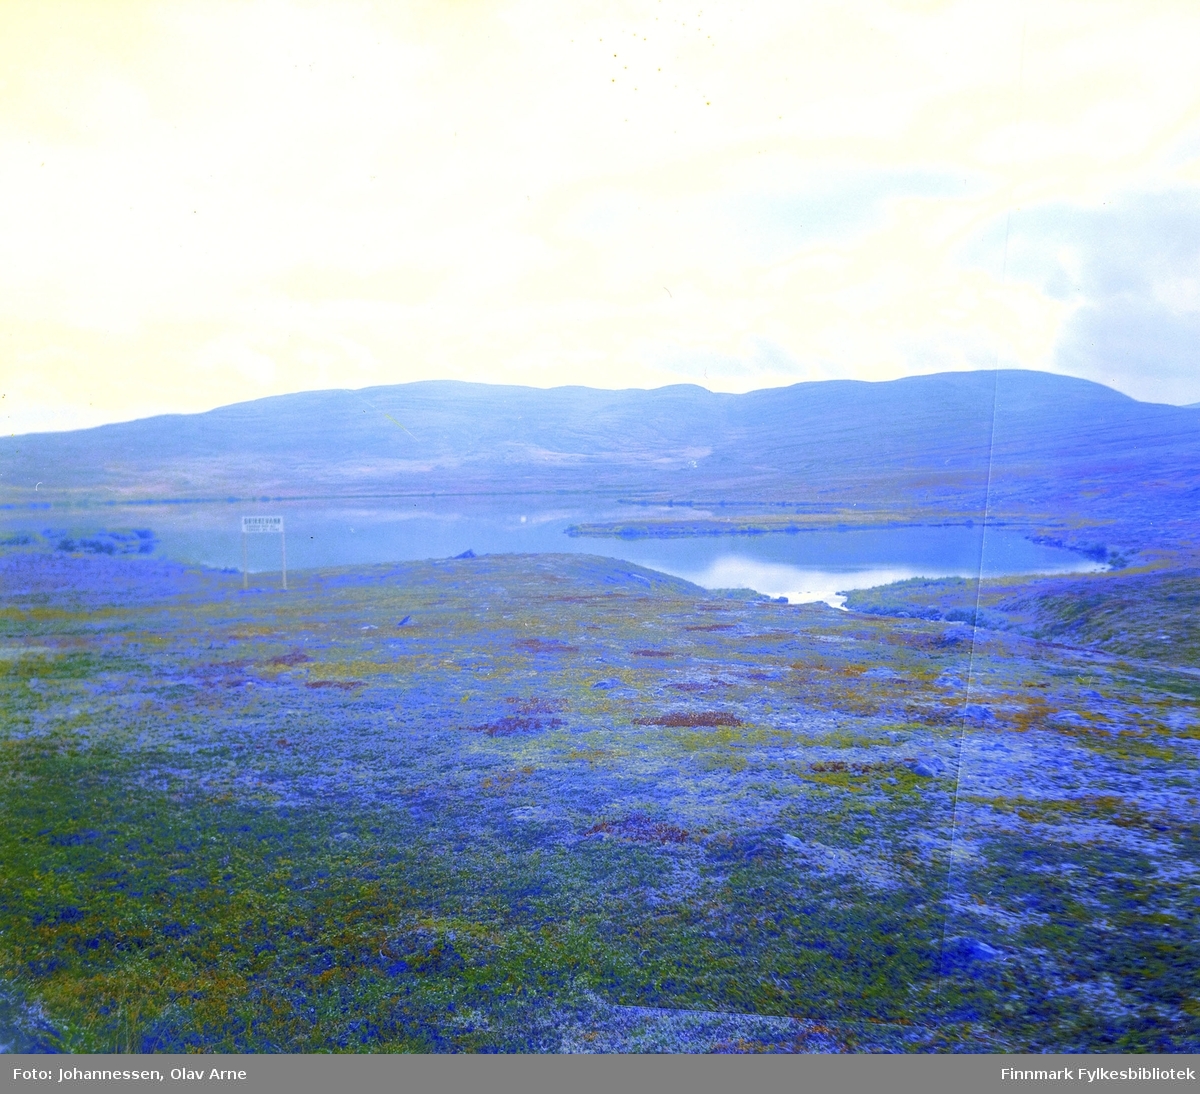 Kan være storvannet mot syltefjord (usikker identifisering)

Foto trolig tatt på 1960/70-tallet